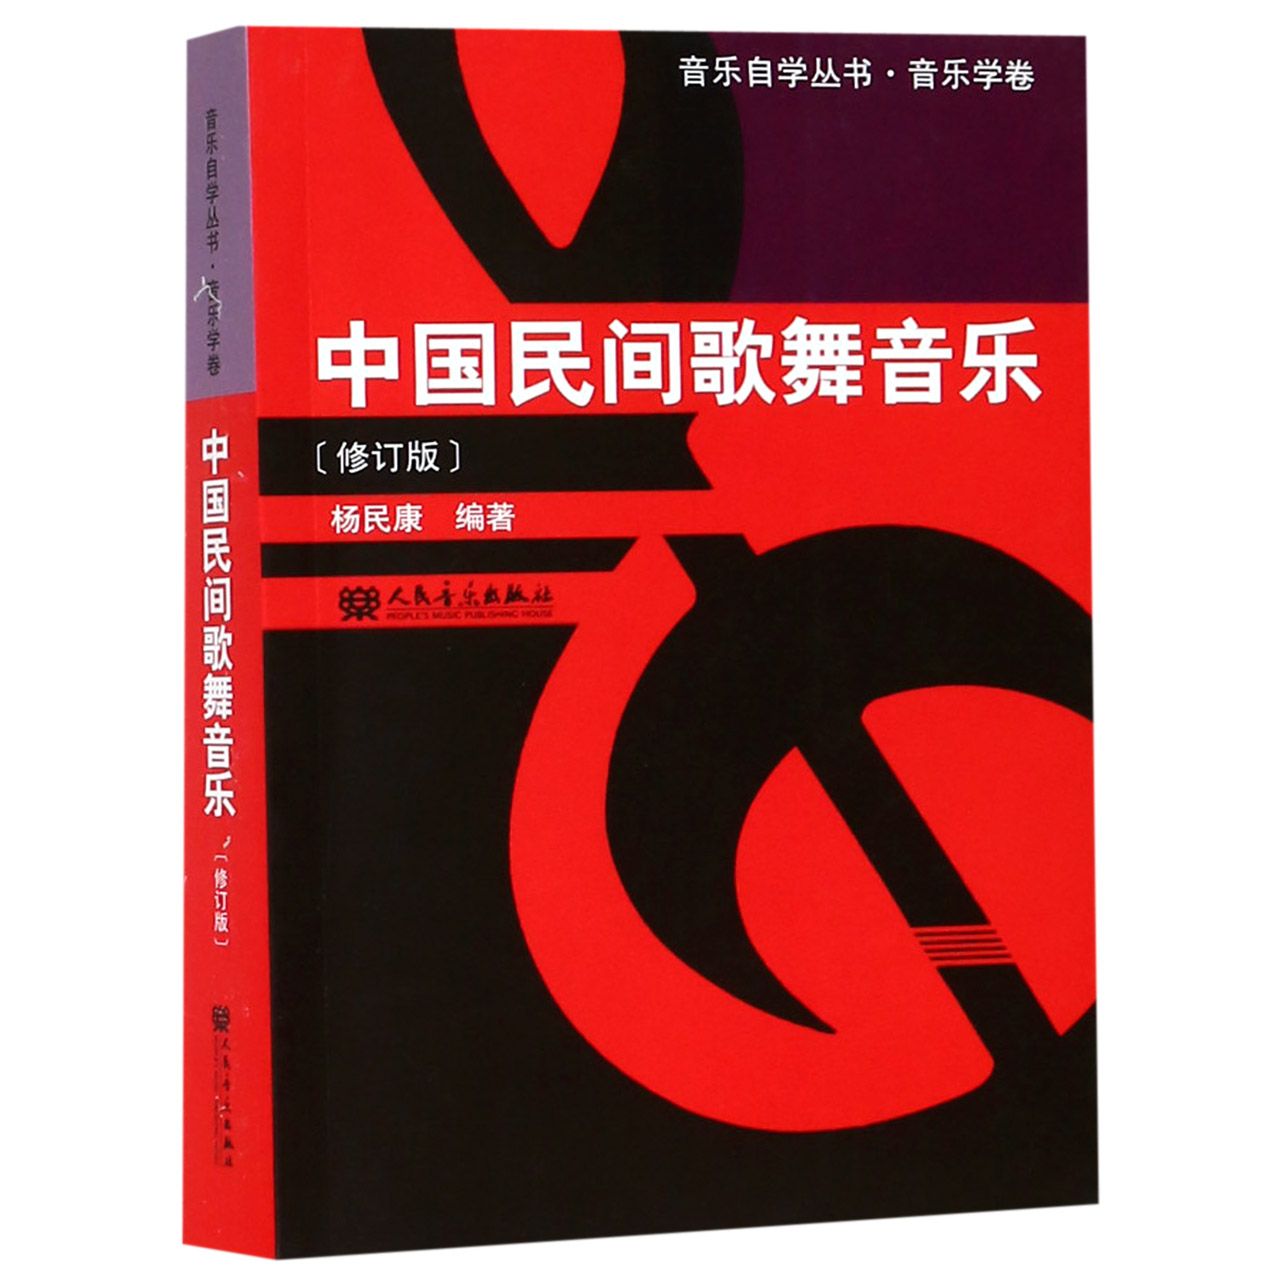 中国民间歌舞音乐(修订版)/音乐自学丛书